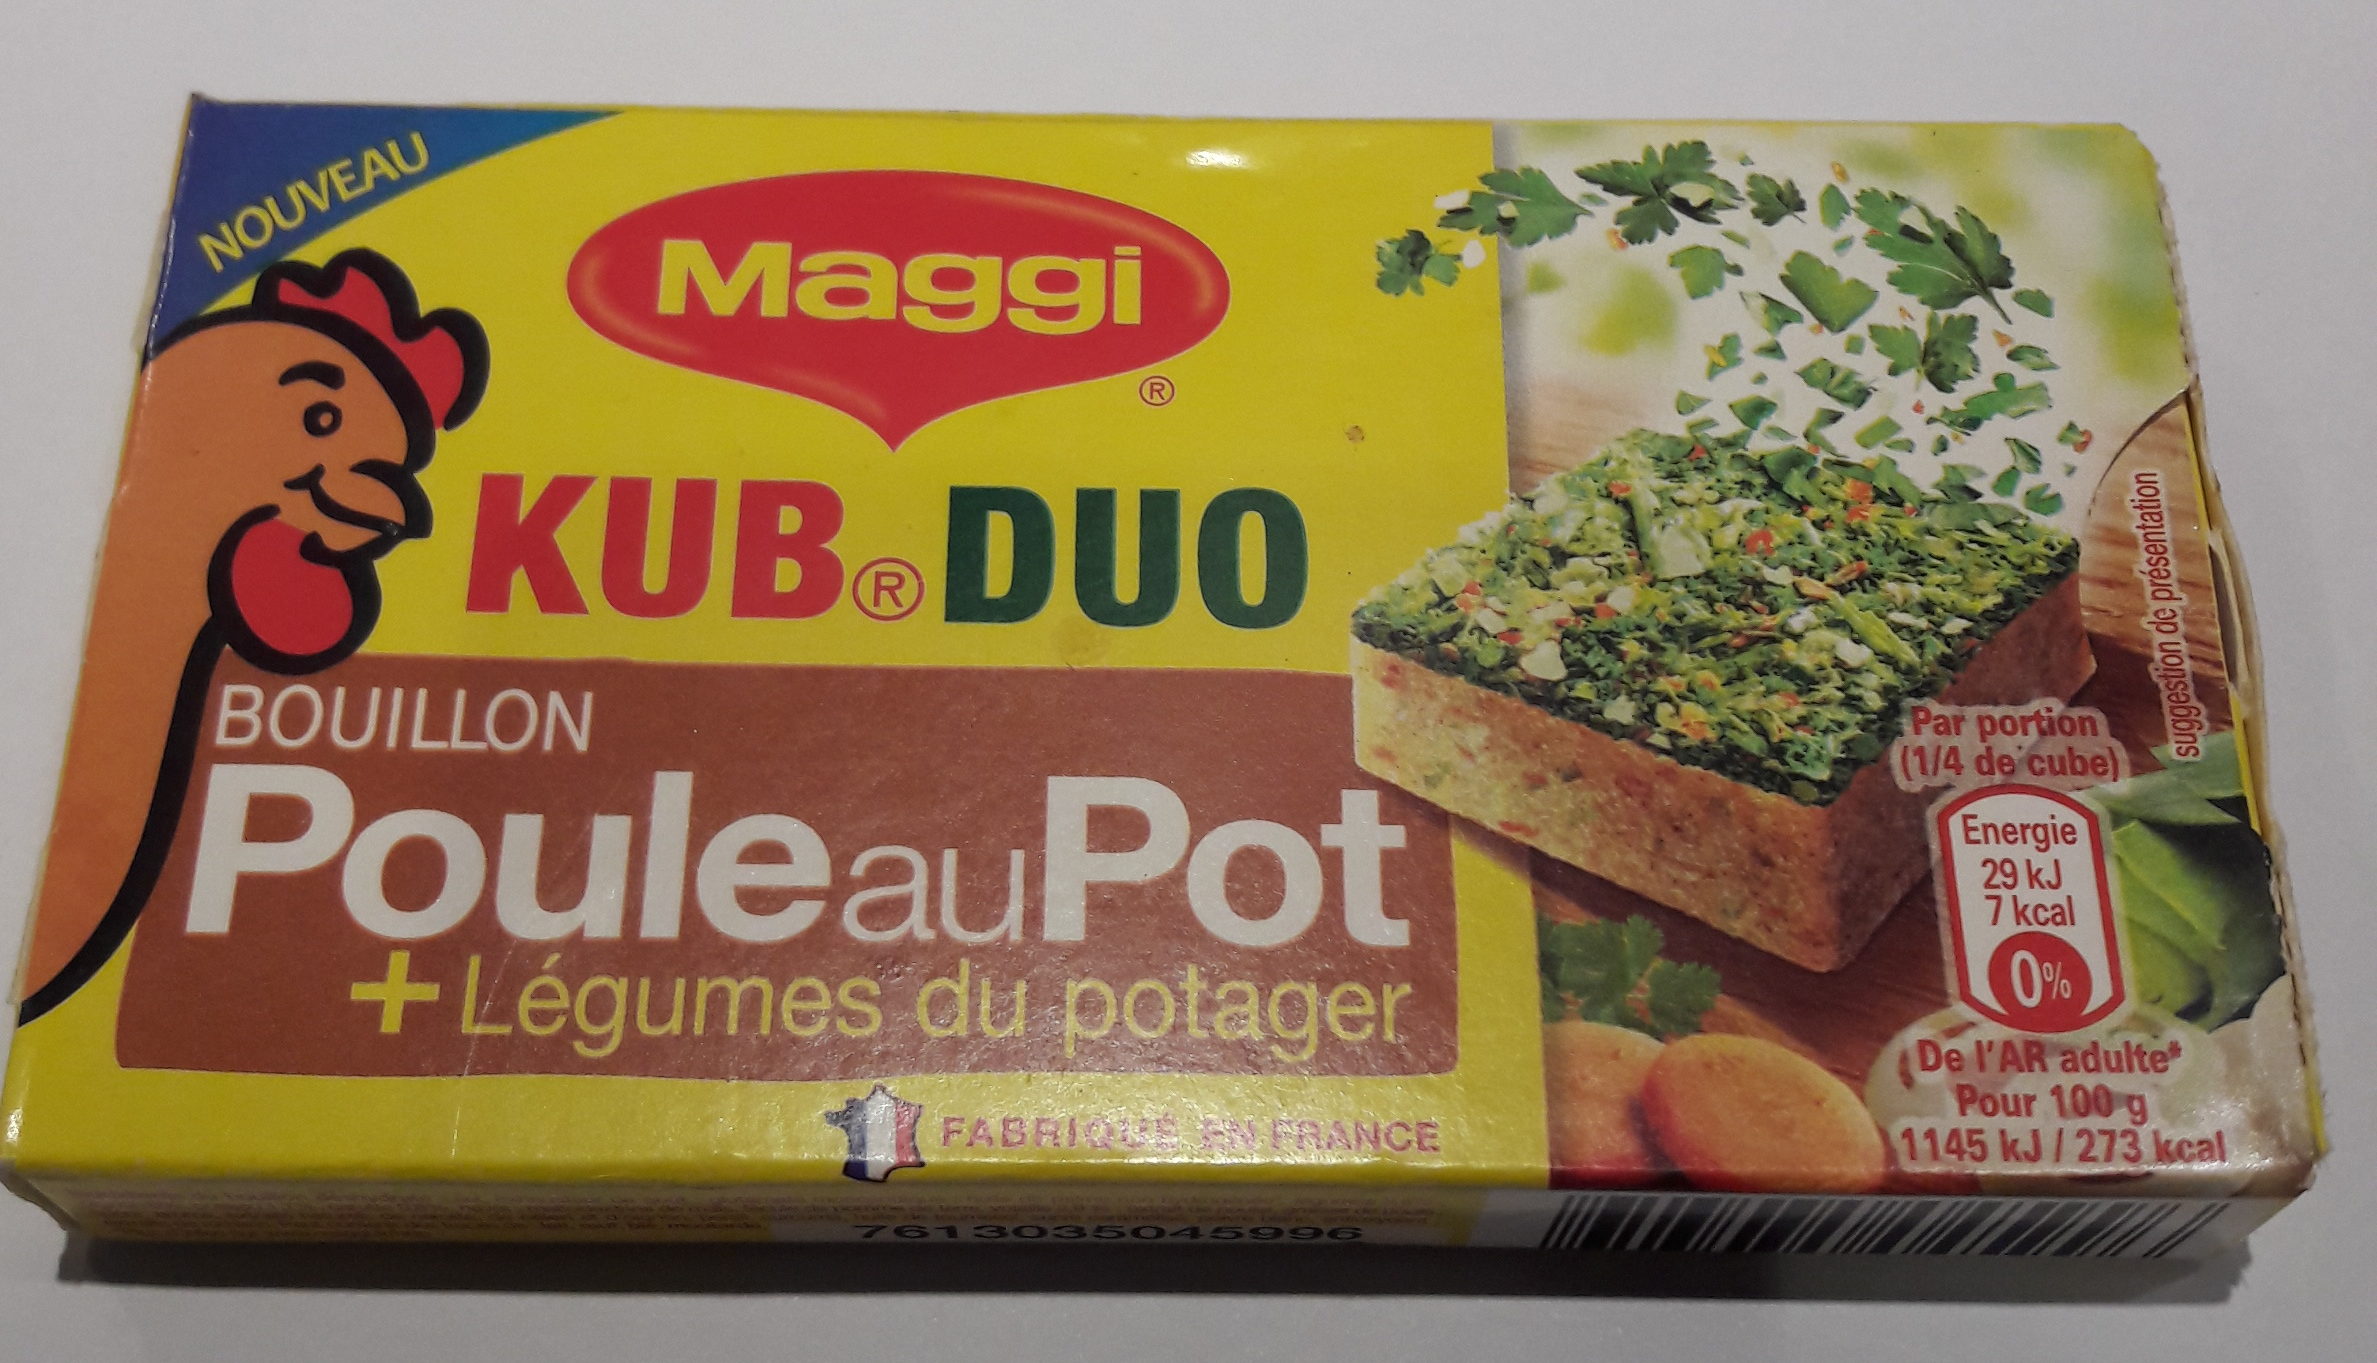 Kub Duo - Bouillon de Poule au Pot + Légumes du Potager - Producto - fr